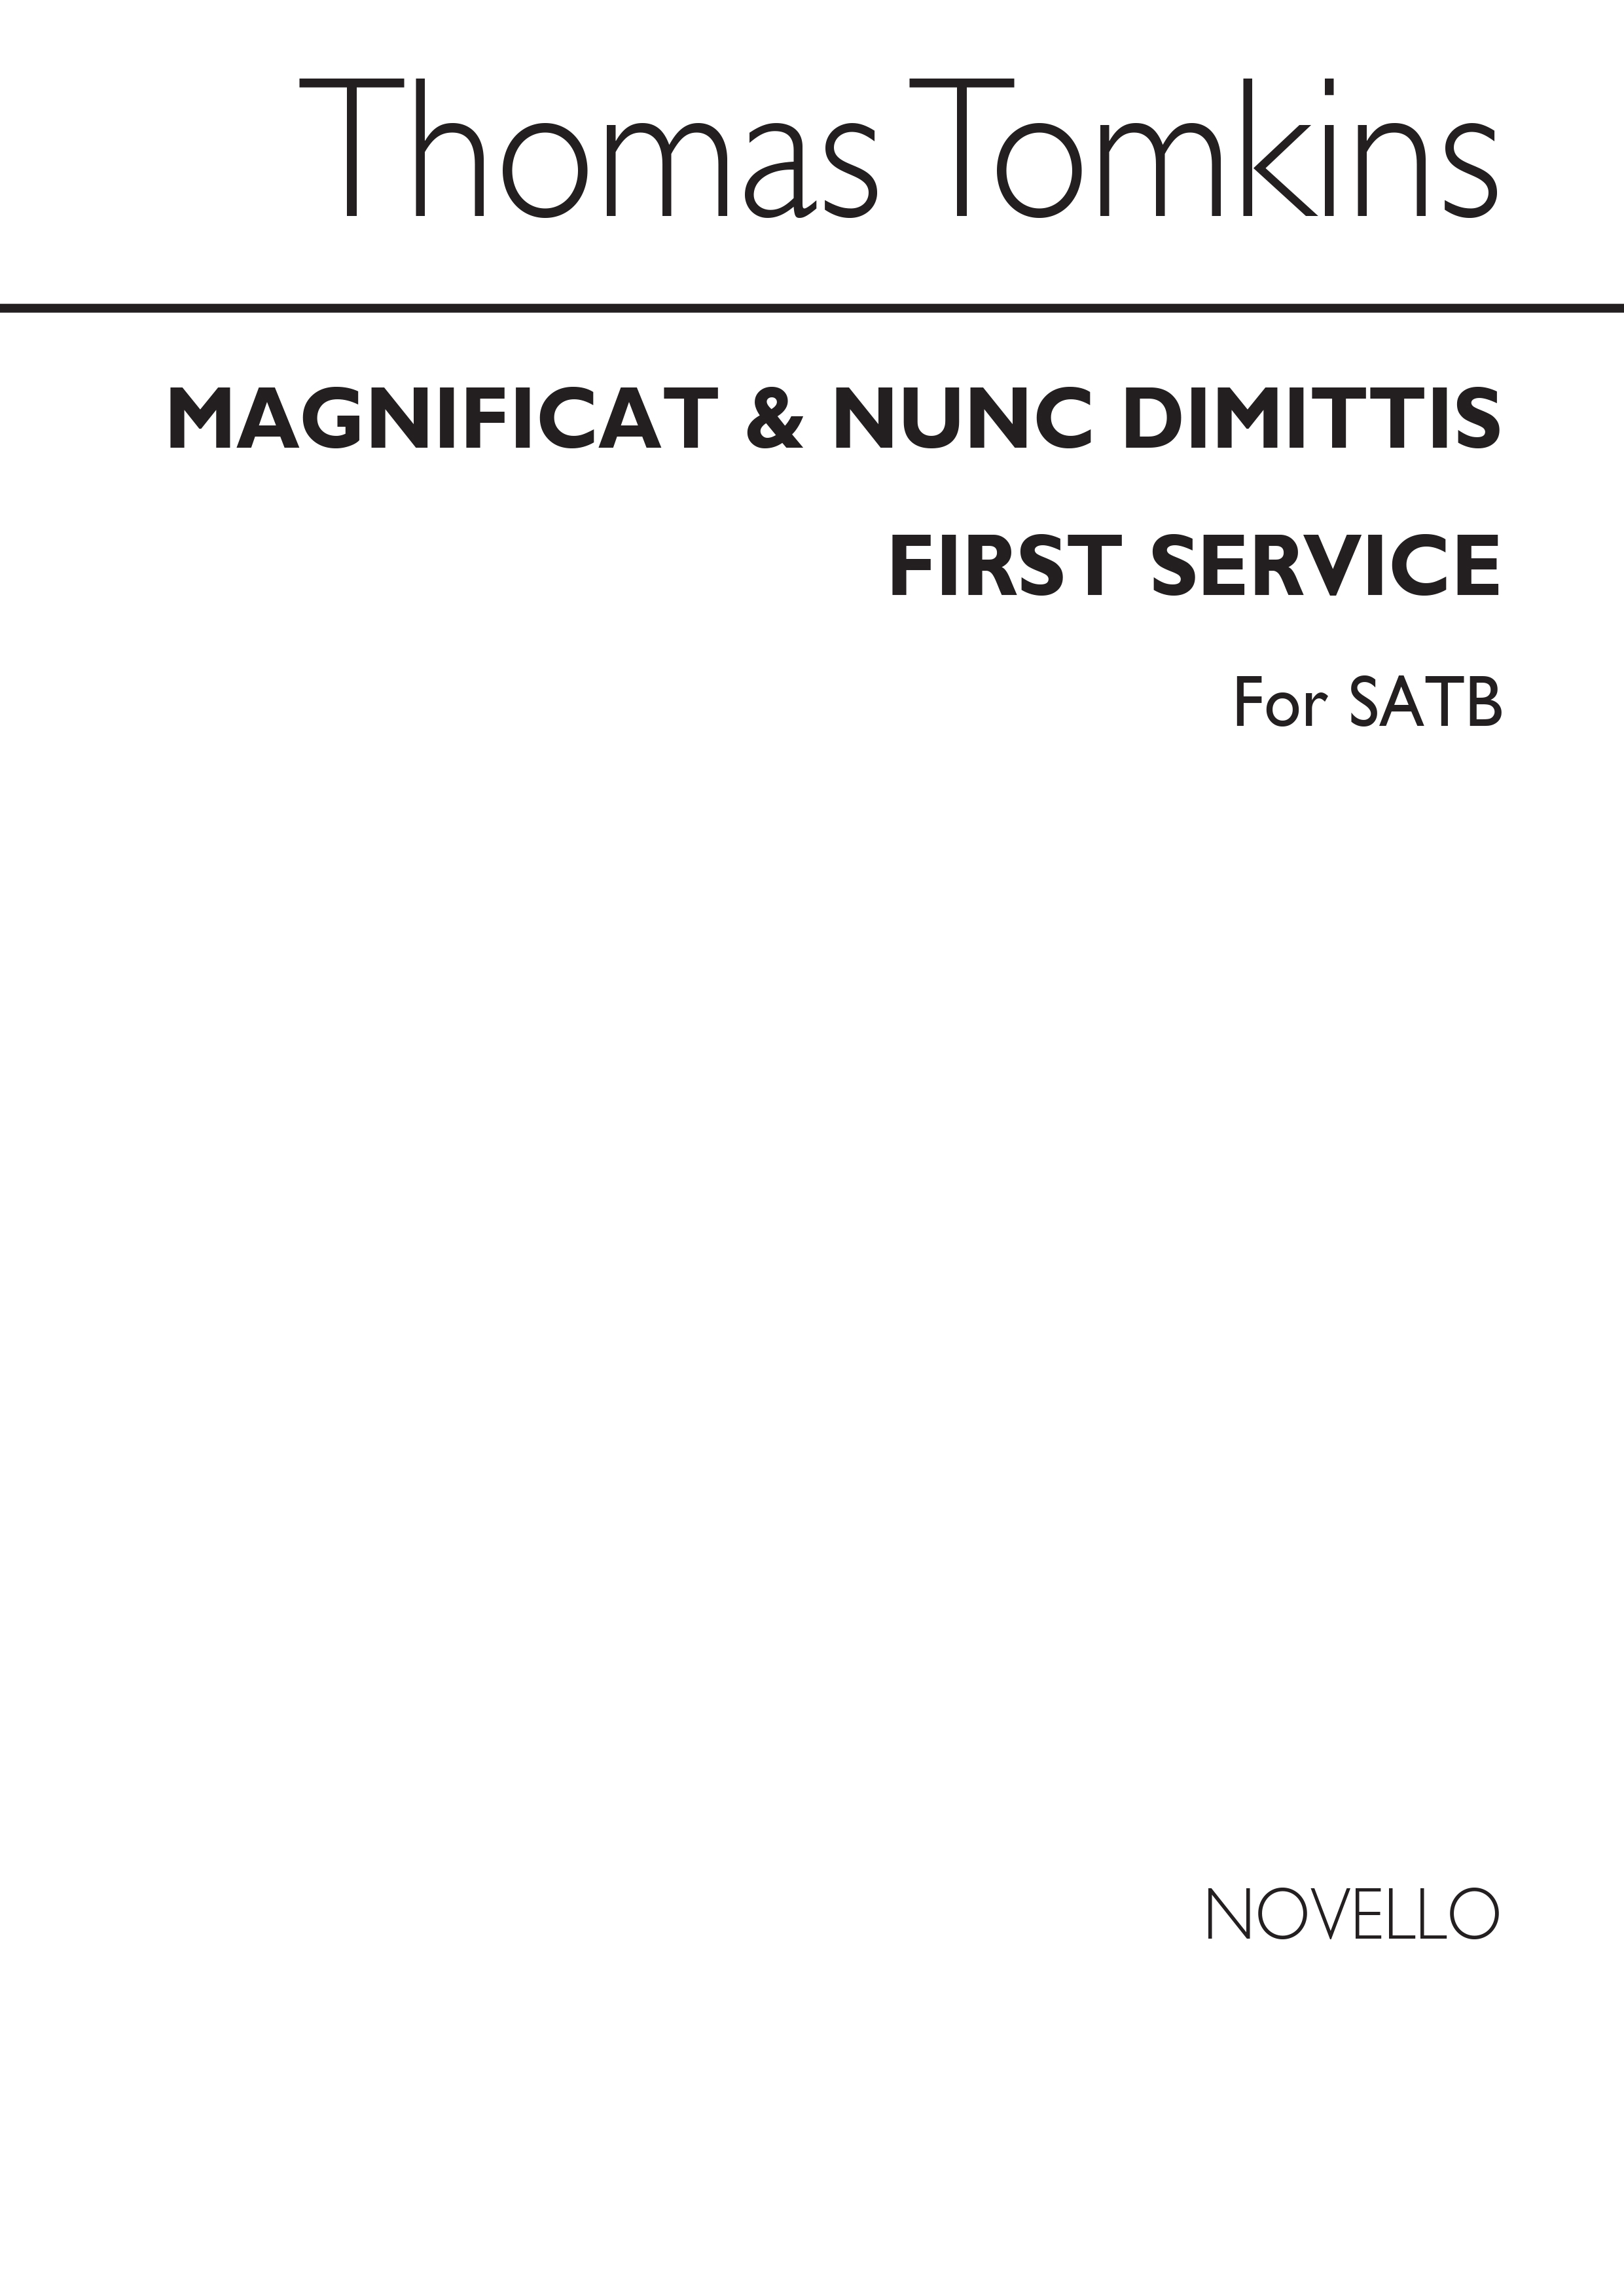 Tomkins Magnificat & Nunc Dimittis First Service Satb